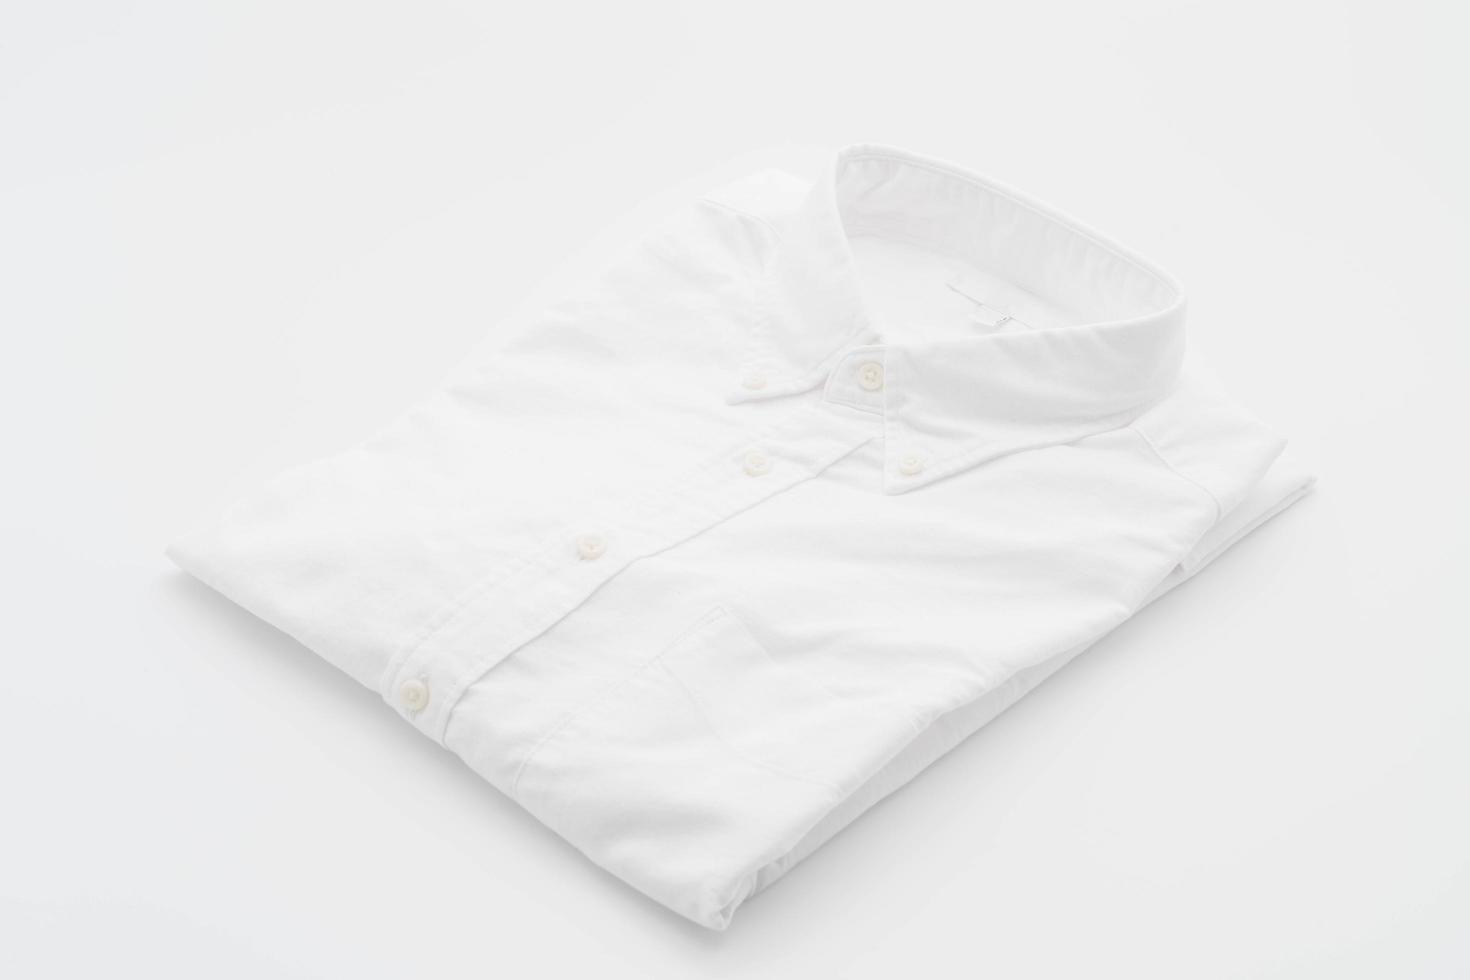 camisa branca em branco foto